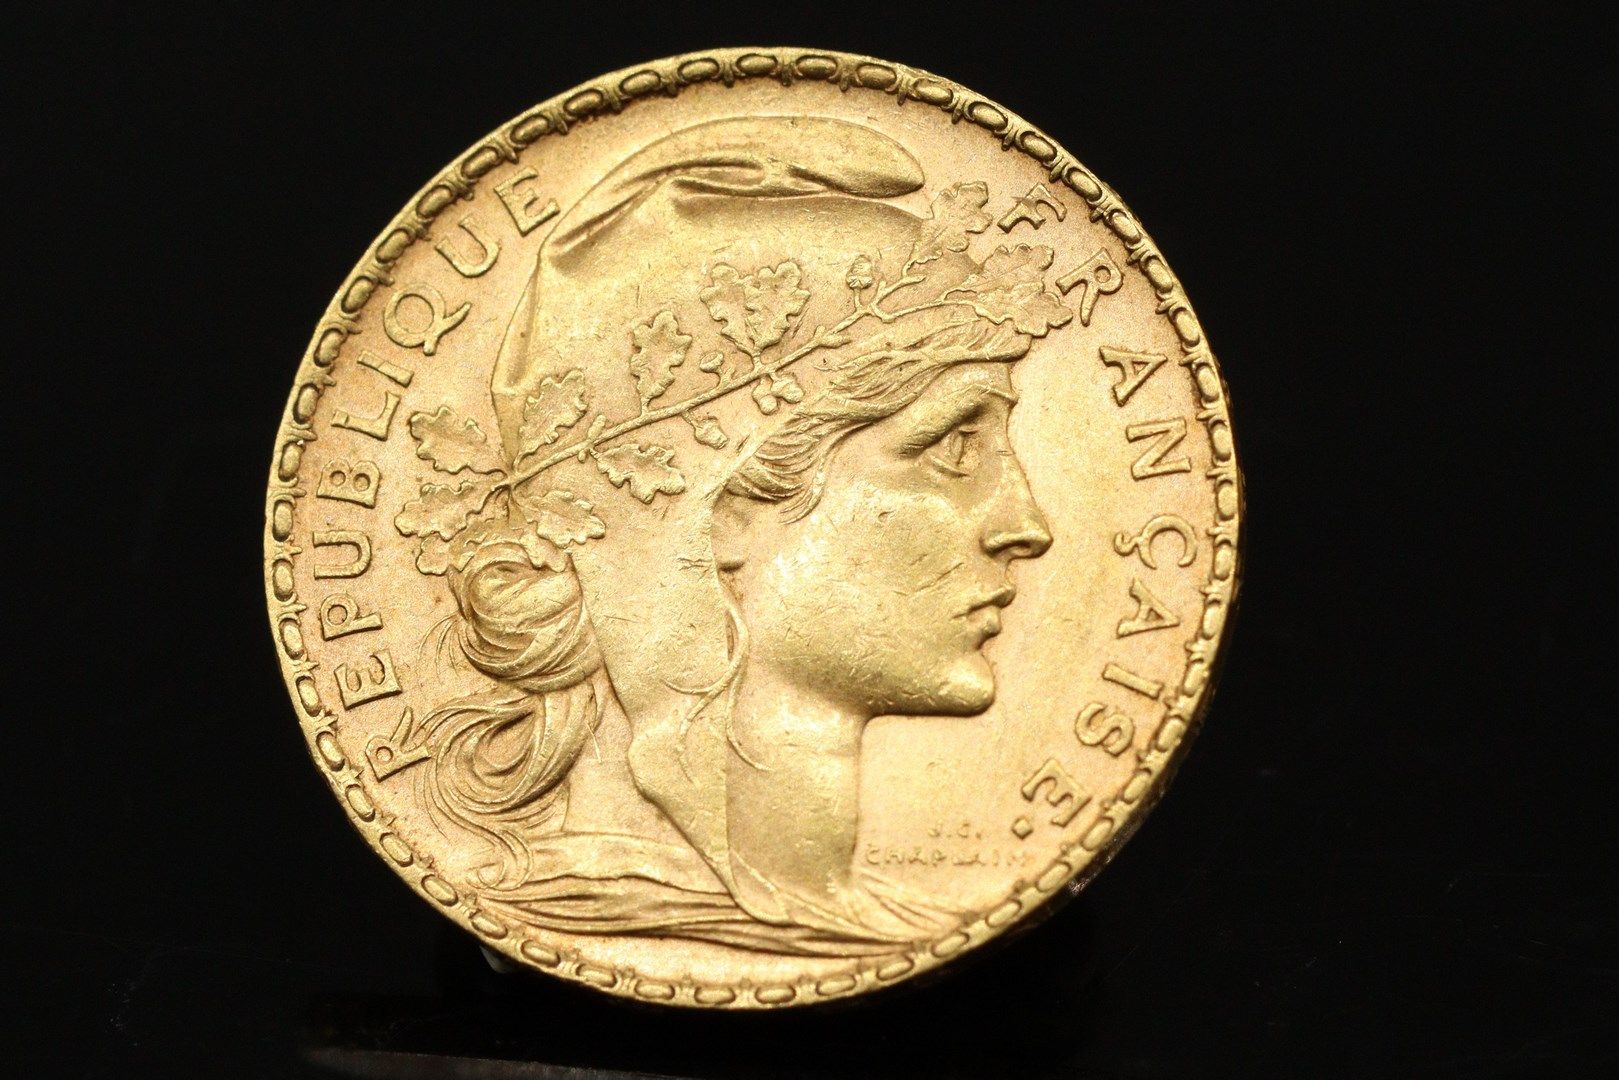 Null Moneta d'oro da 20 franchi con gallo (1902)

Peso: 6,46 g.